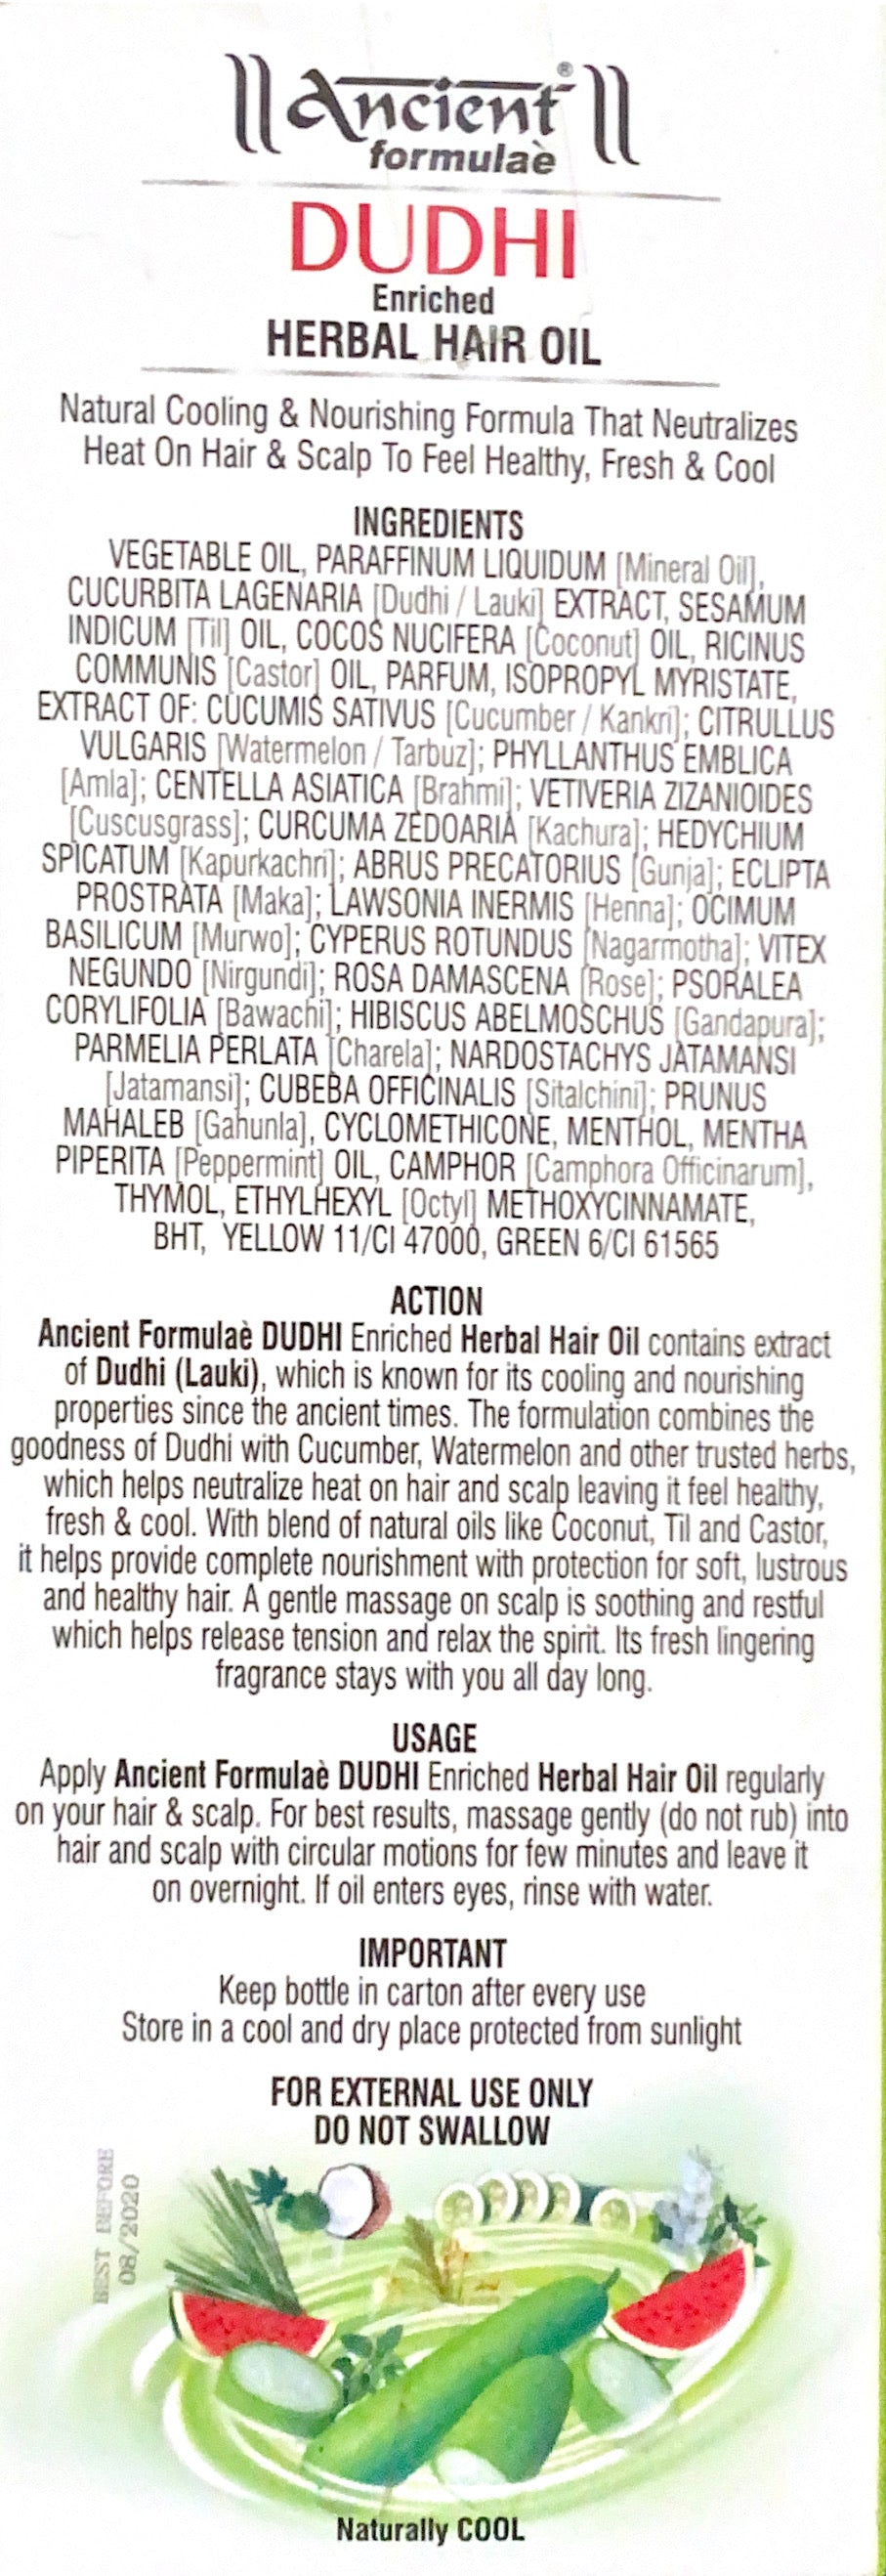 Dudhi Enriched Herbal Hair Oil